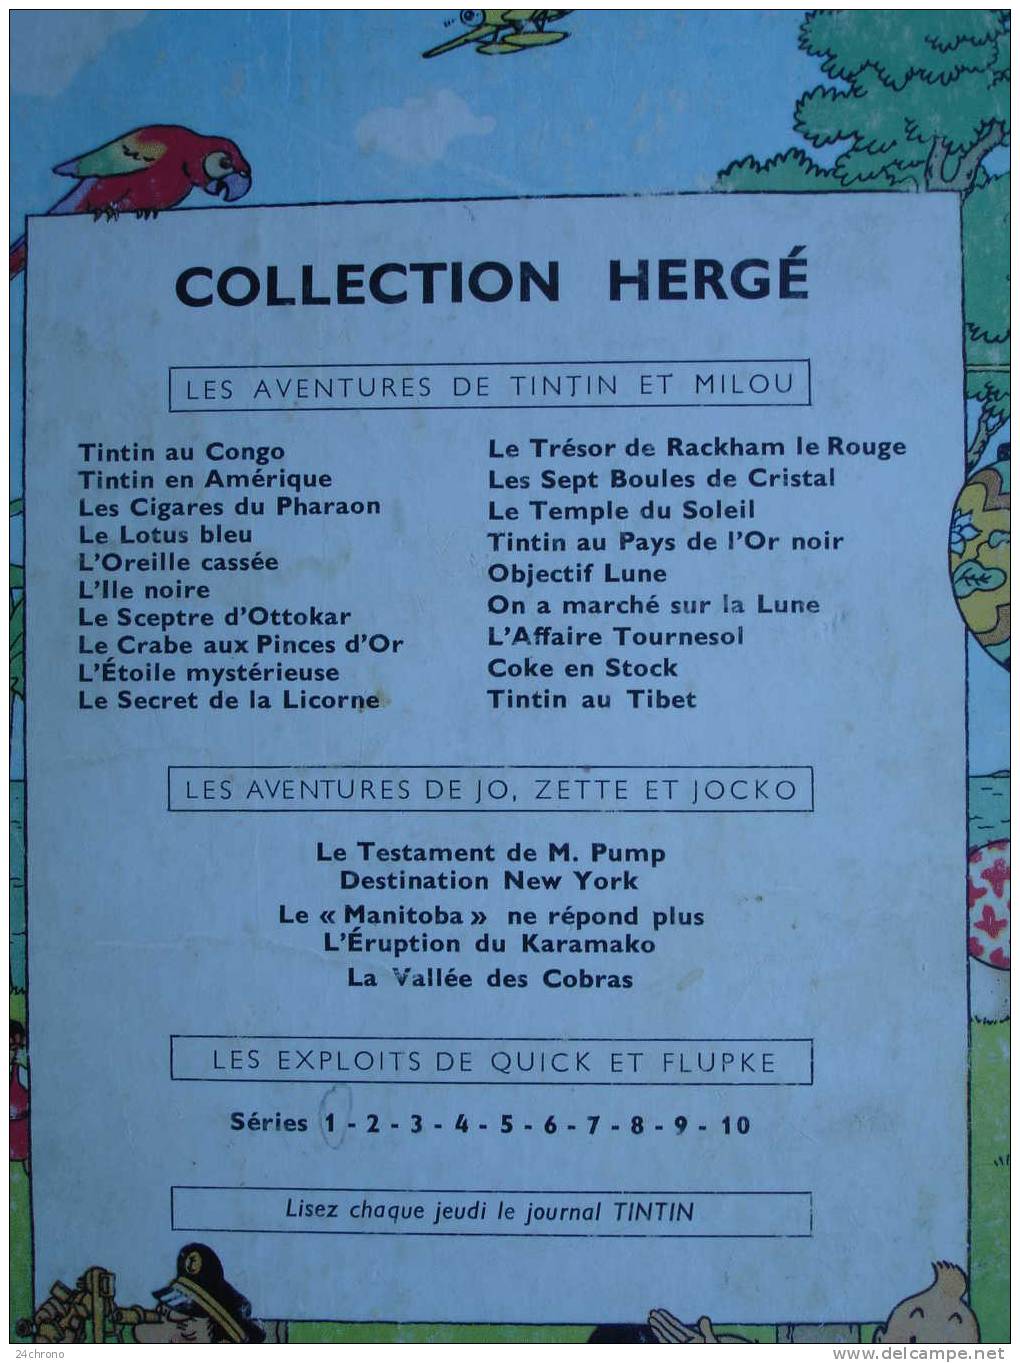 Herge: Les Aventures de Tintin, Editions Casterman, Imprime en France, L´ Affaire Tournesol, B31, 1962